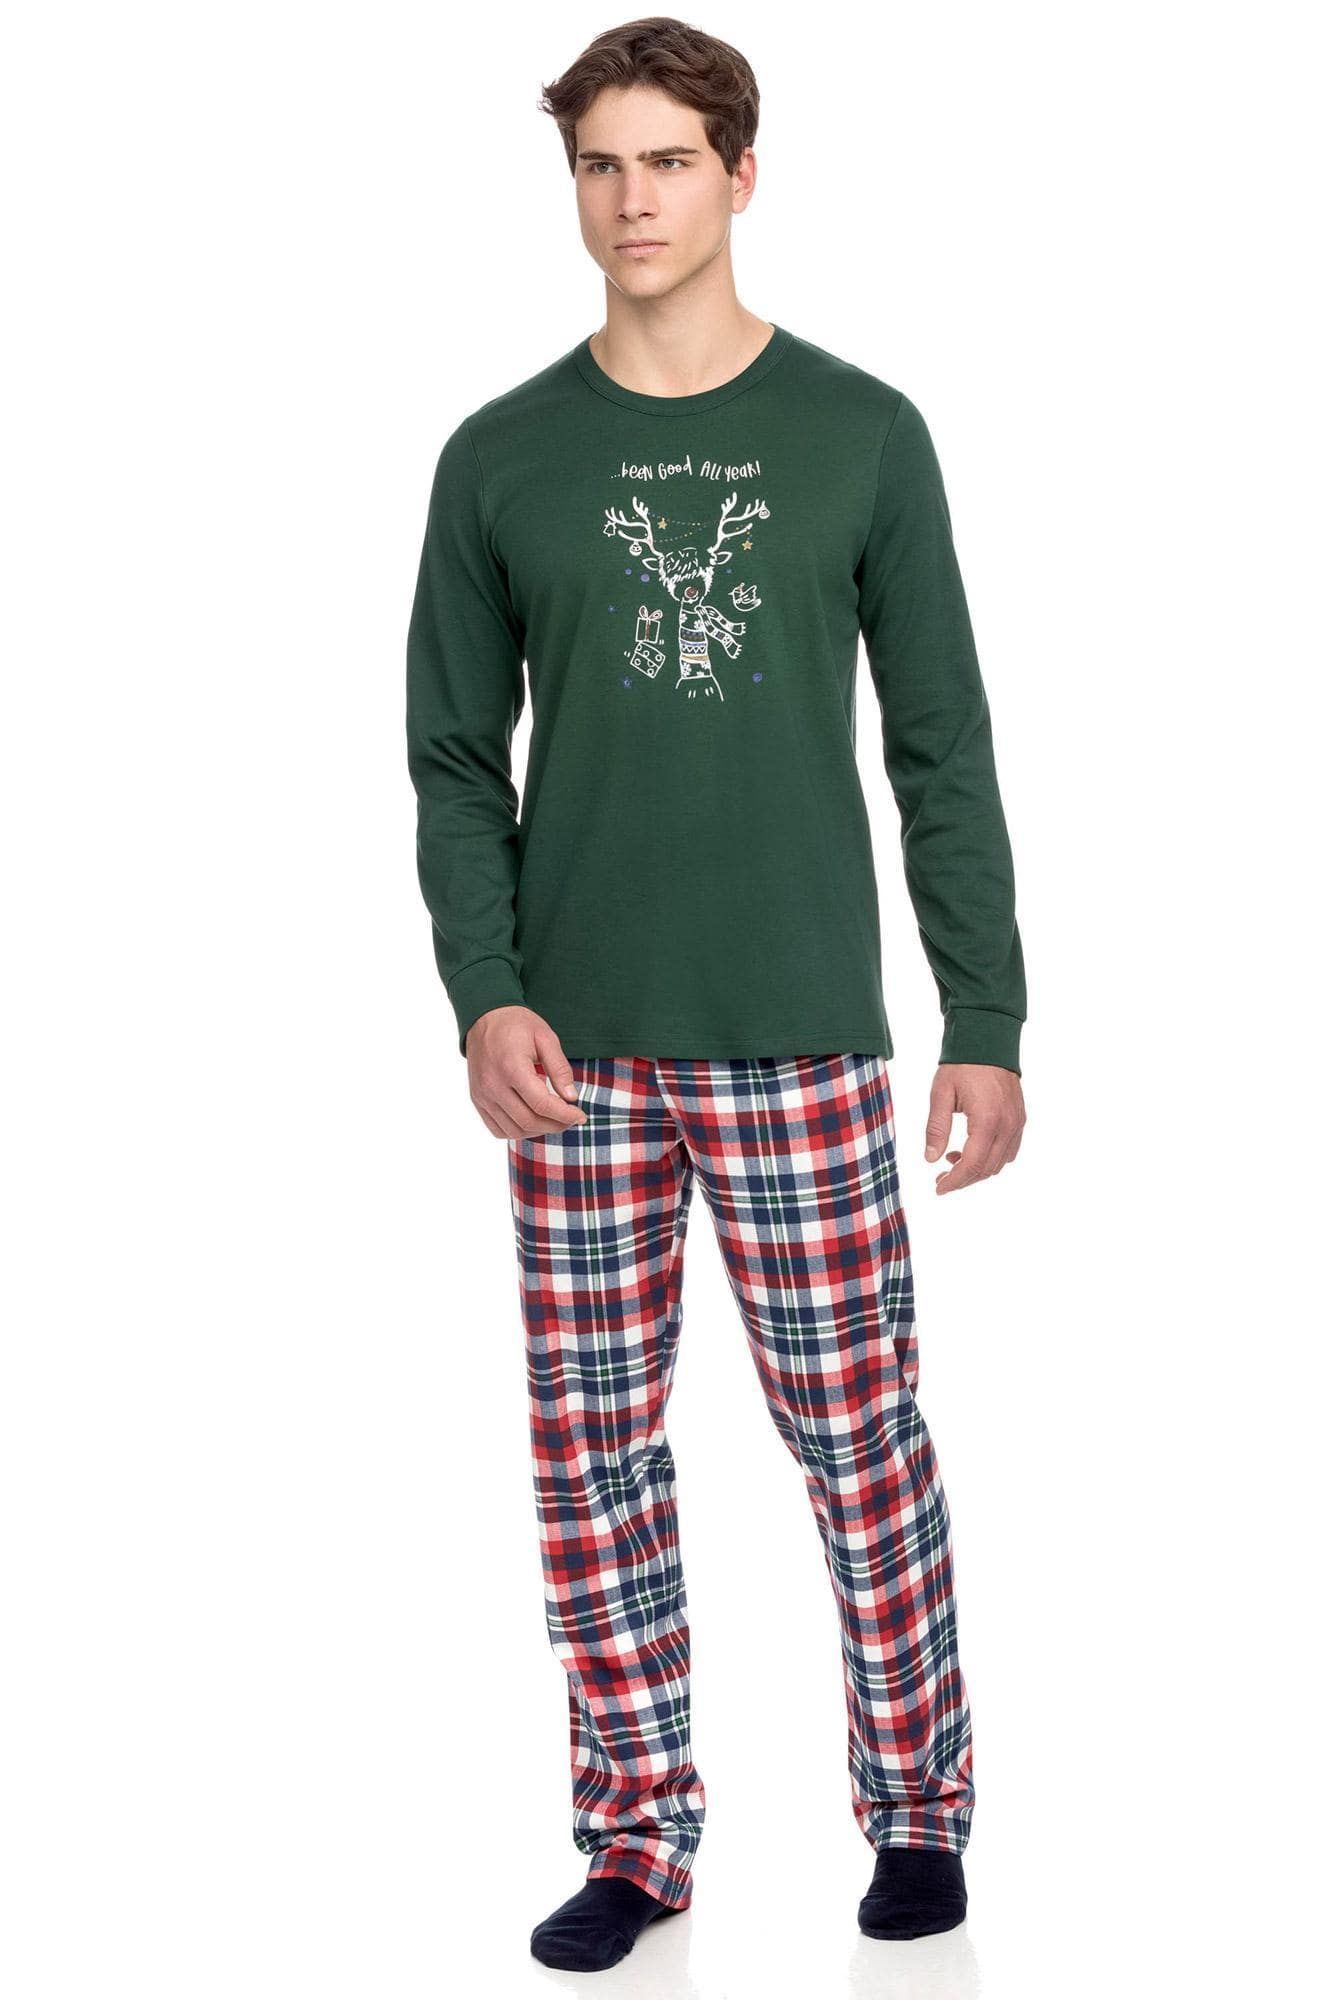 Men’s Pyjamas with Christmas artwork